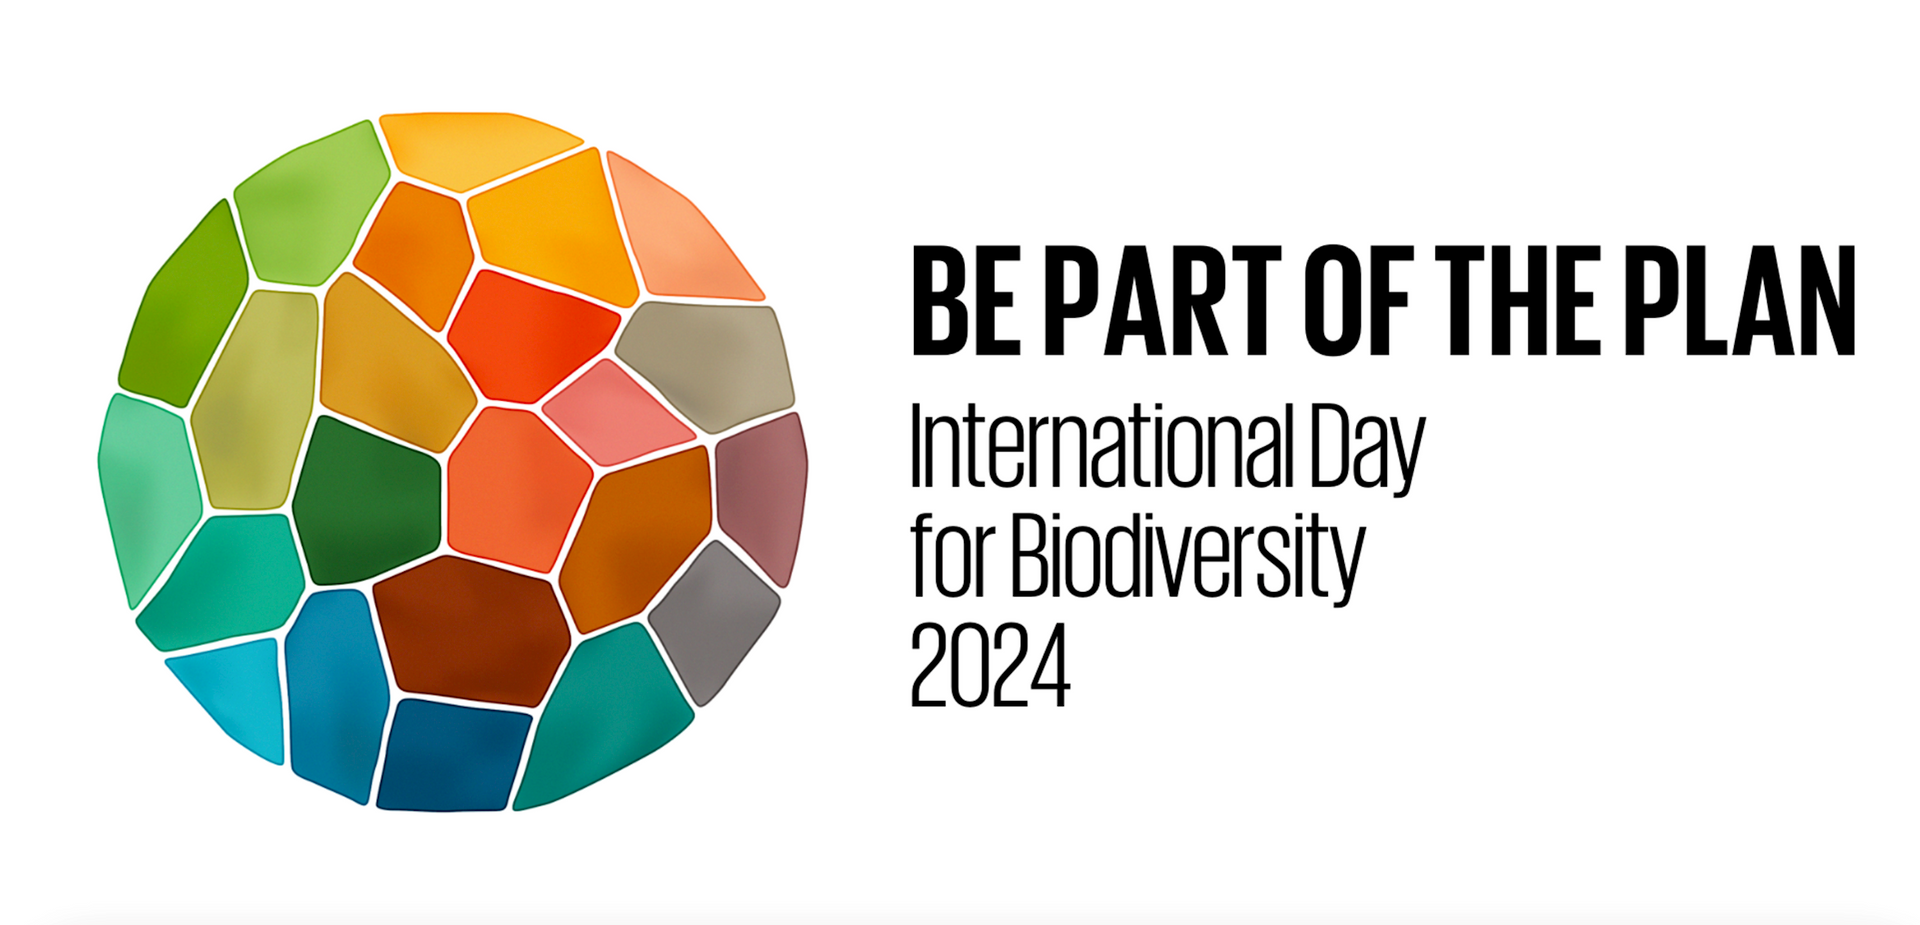 Chủ đề của Ngày Quốc tế Đa dạng sinh học năm 2024 là “Be part of the Plan” - “Hãy là một phần của Kế hoạch đa dạng sinh học”.